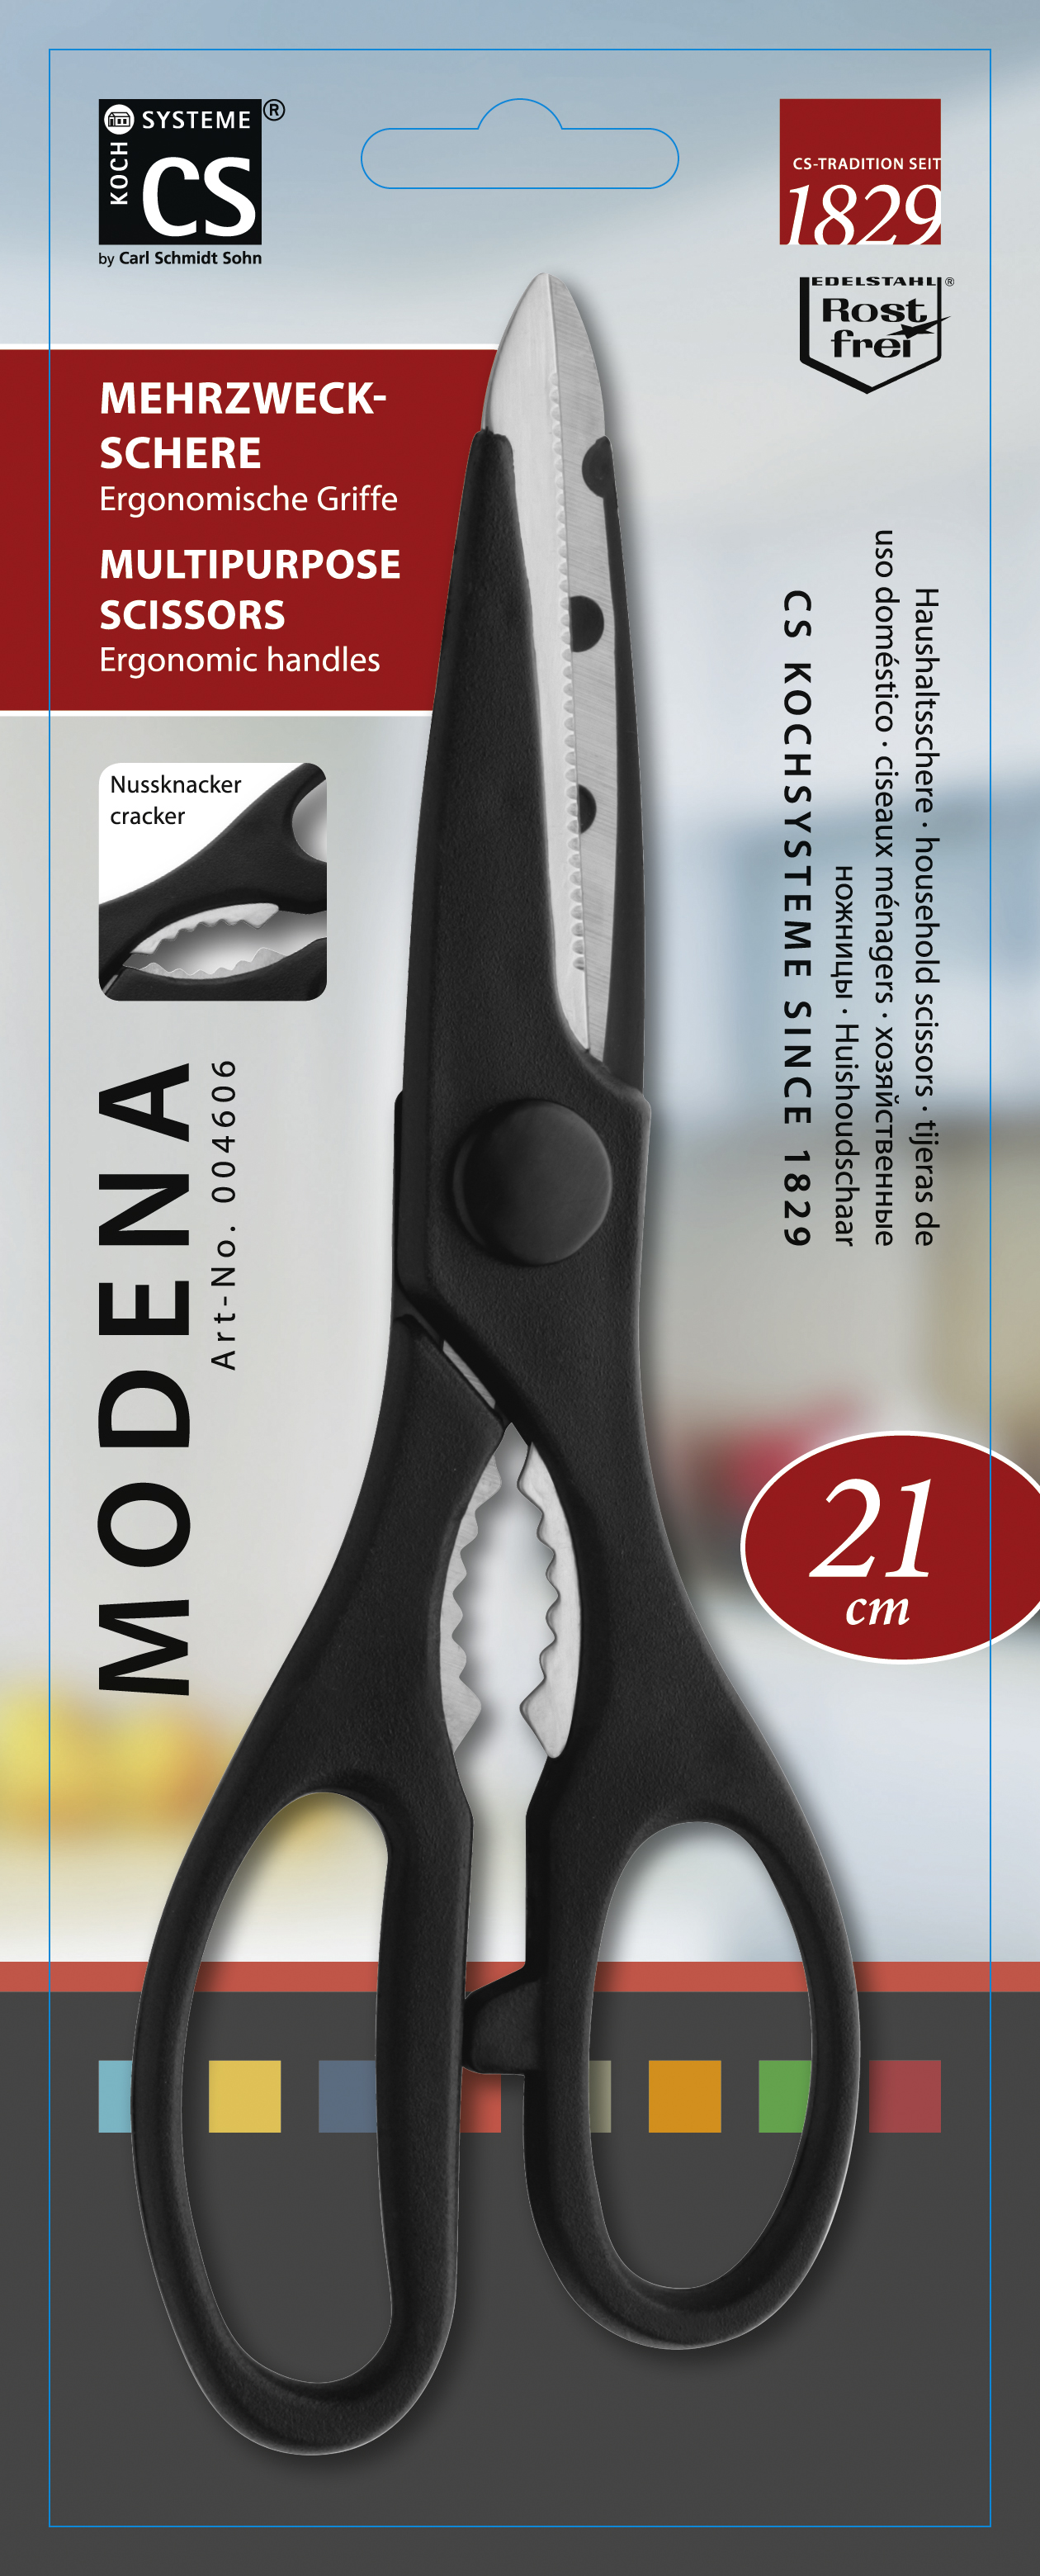 фото Ножницы кухонные CS-KOCHSYSTEME Modena, CS004606, Нержавеющая сталь